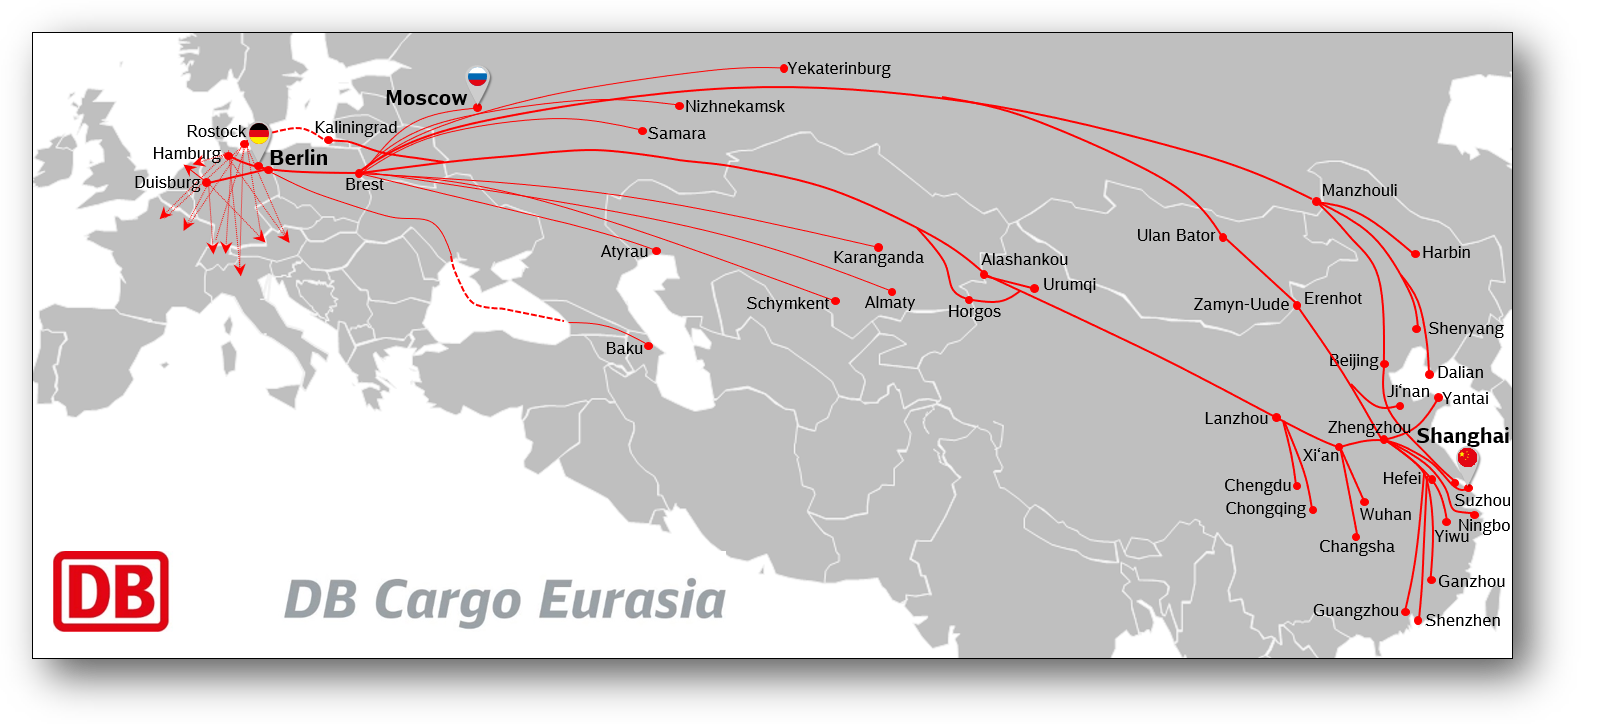 DB Cargo Eurasia main routes 2021